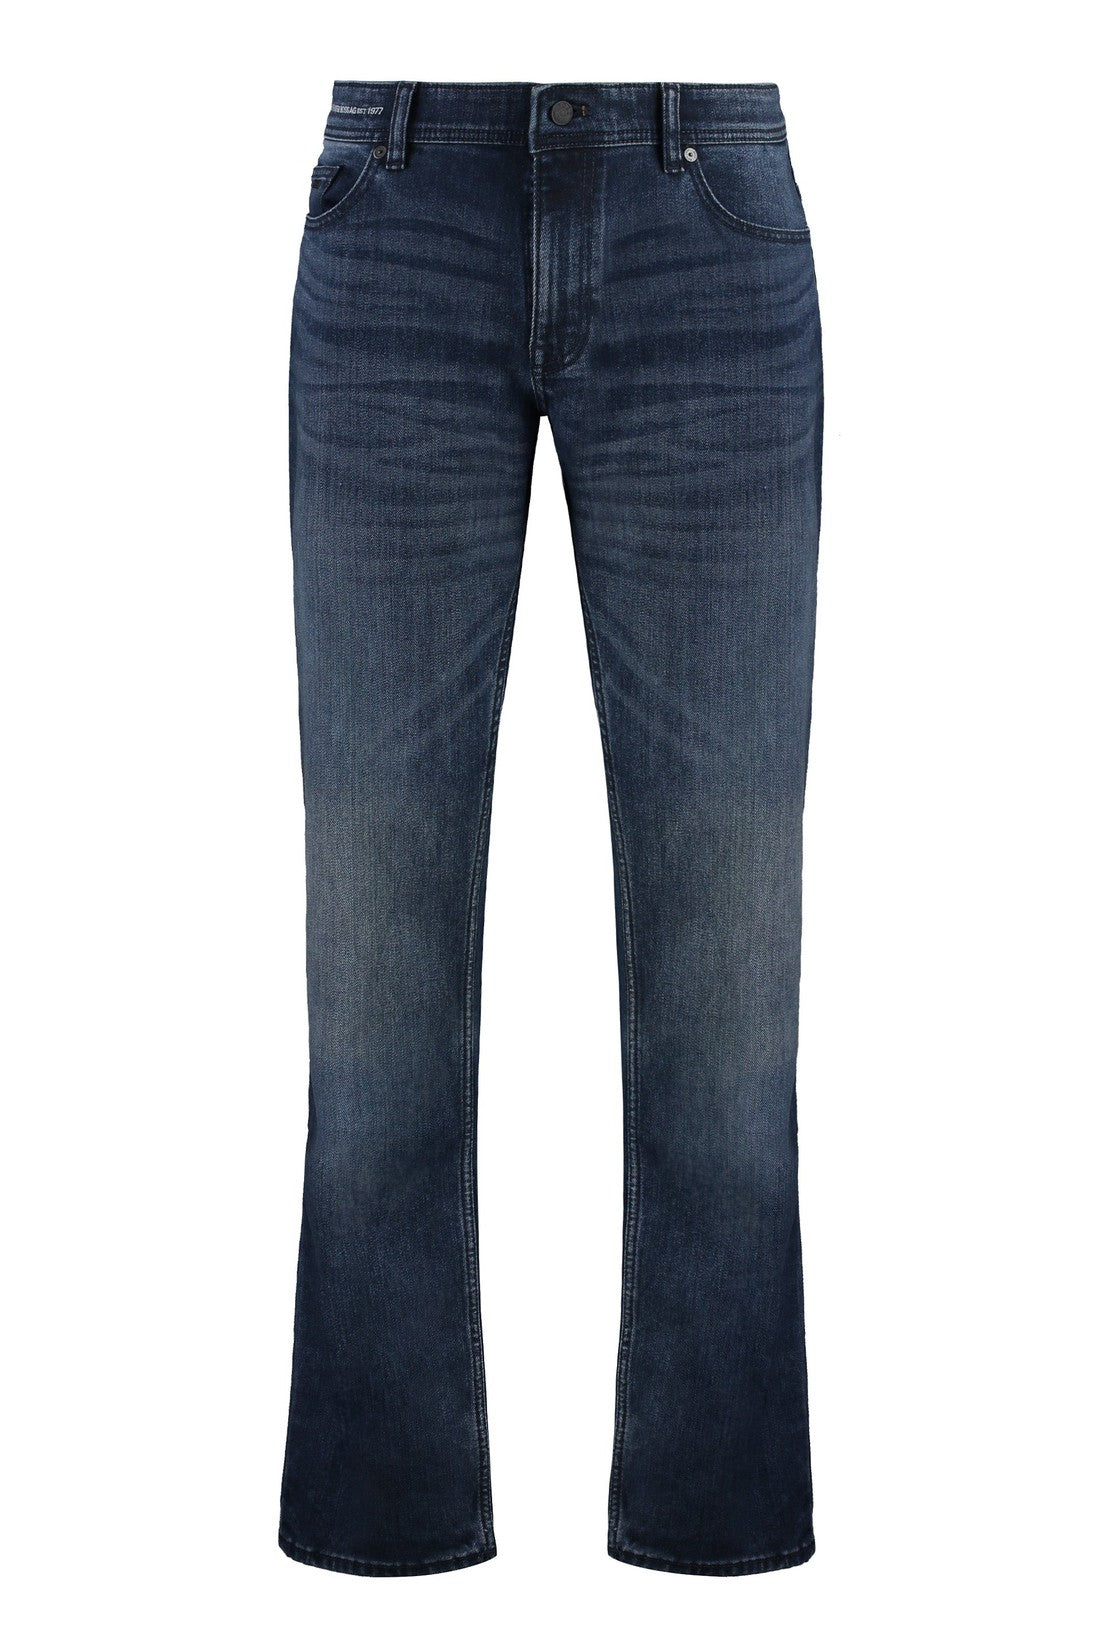 BOSS-OUTLET-SALE-slim fit jeans-ARCHIVIST